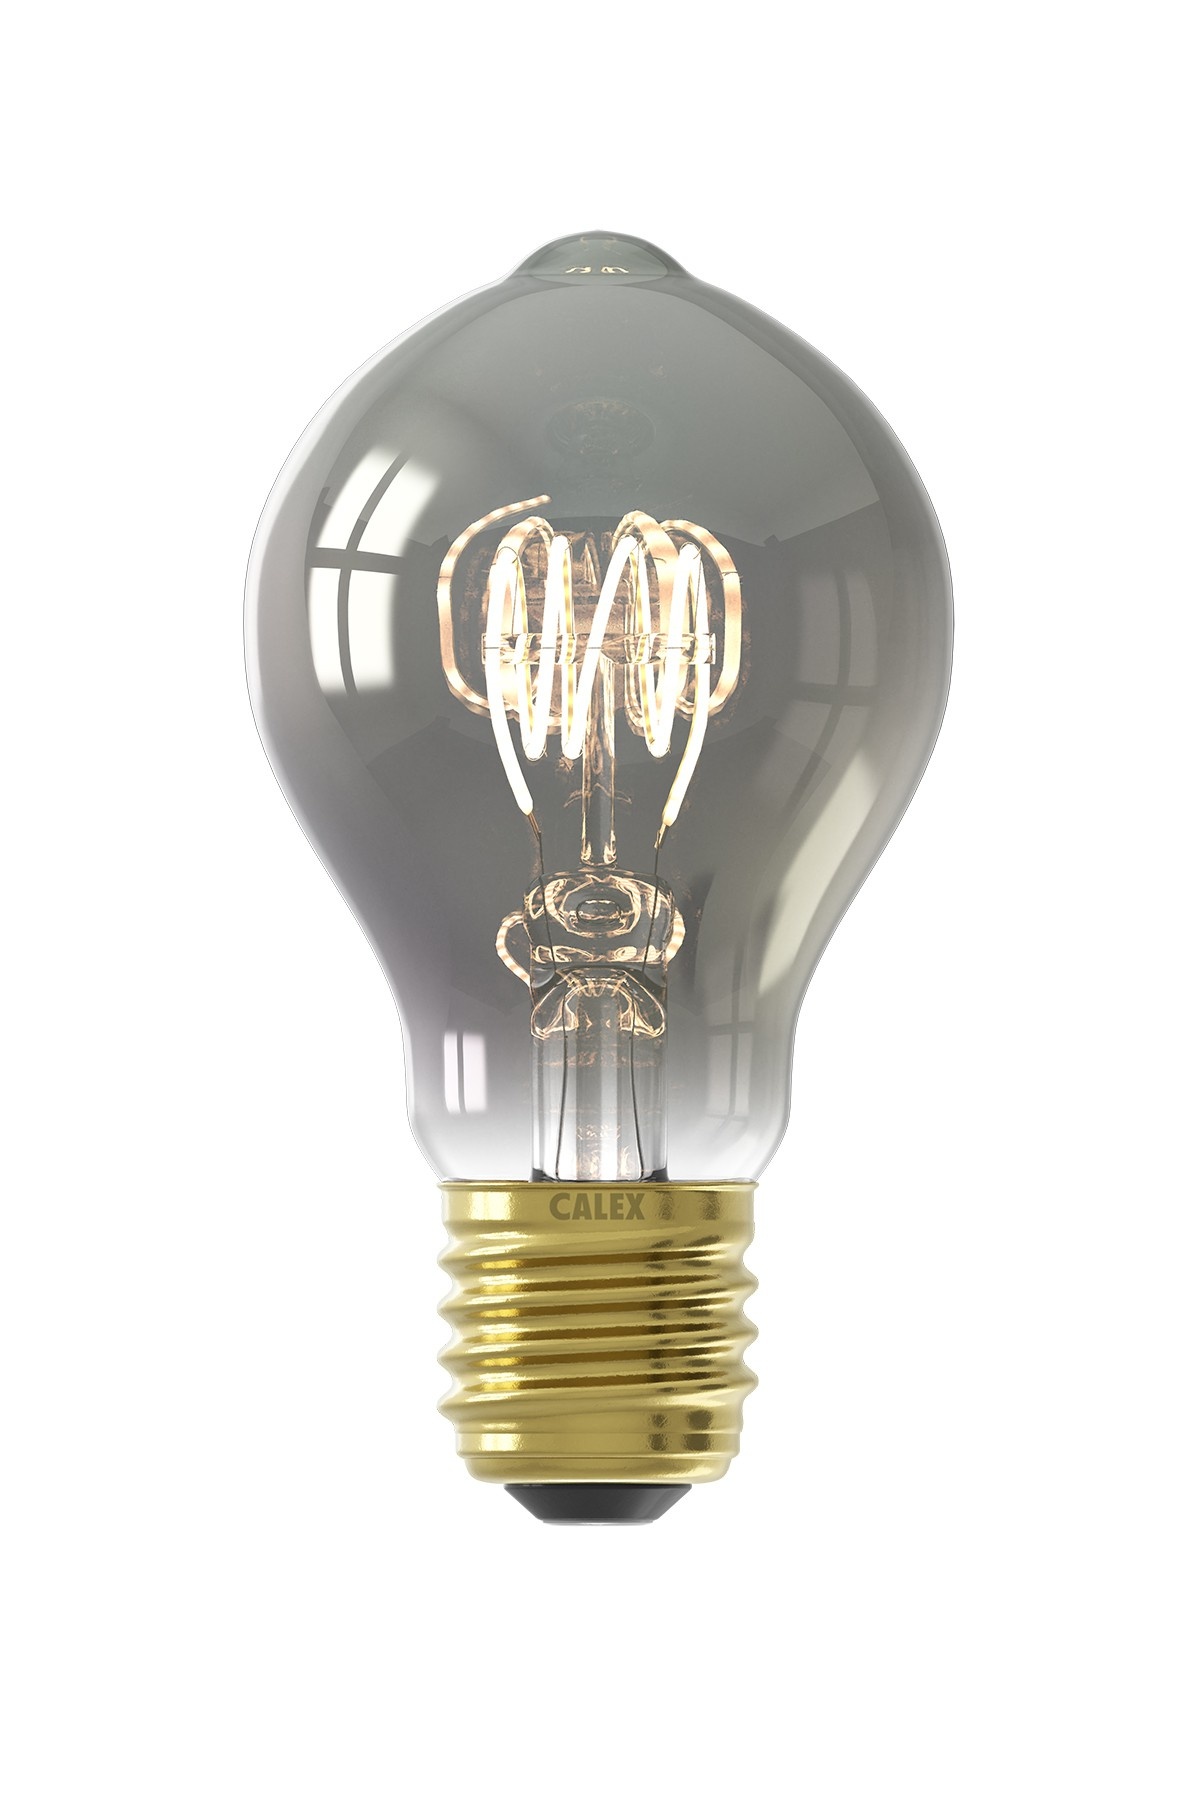 Flex LED lamp Titanium Calex 4W) - Light